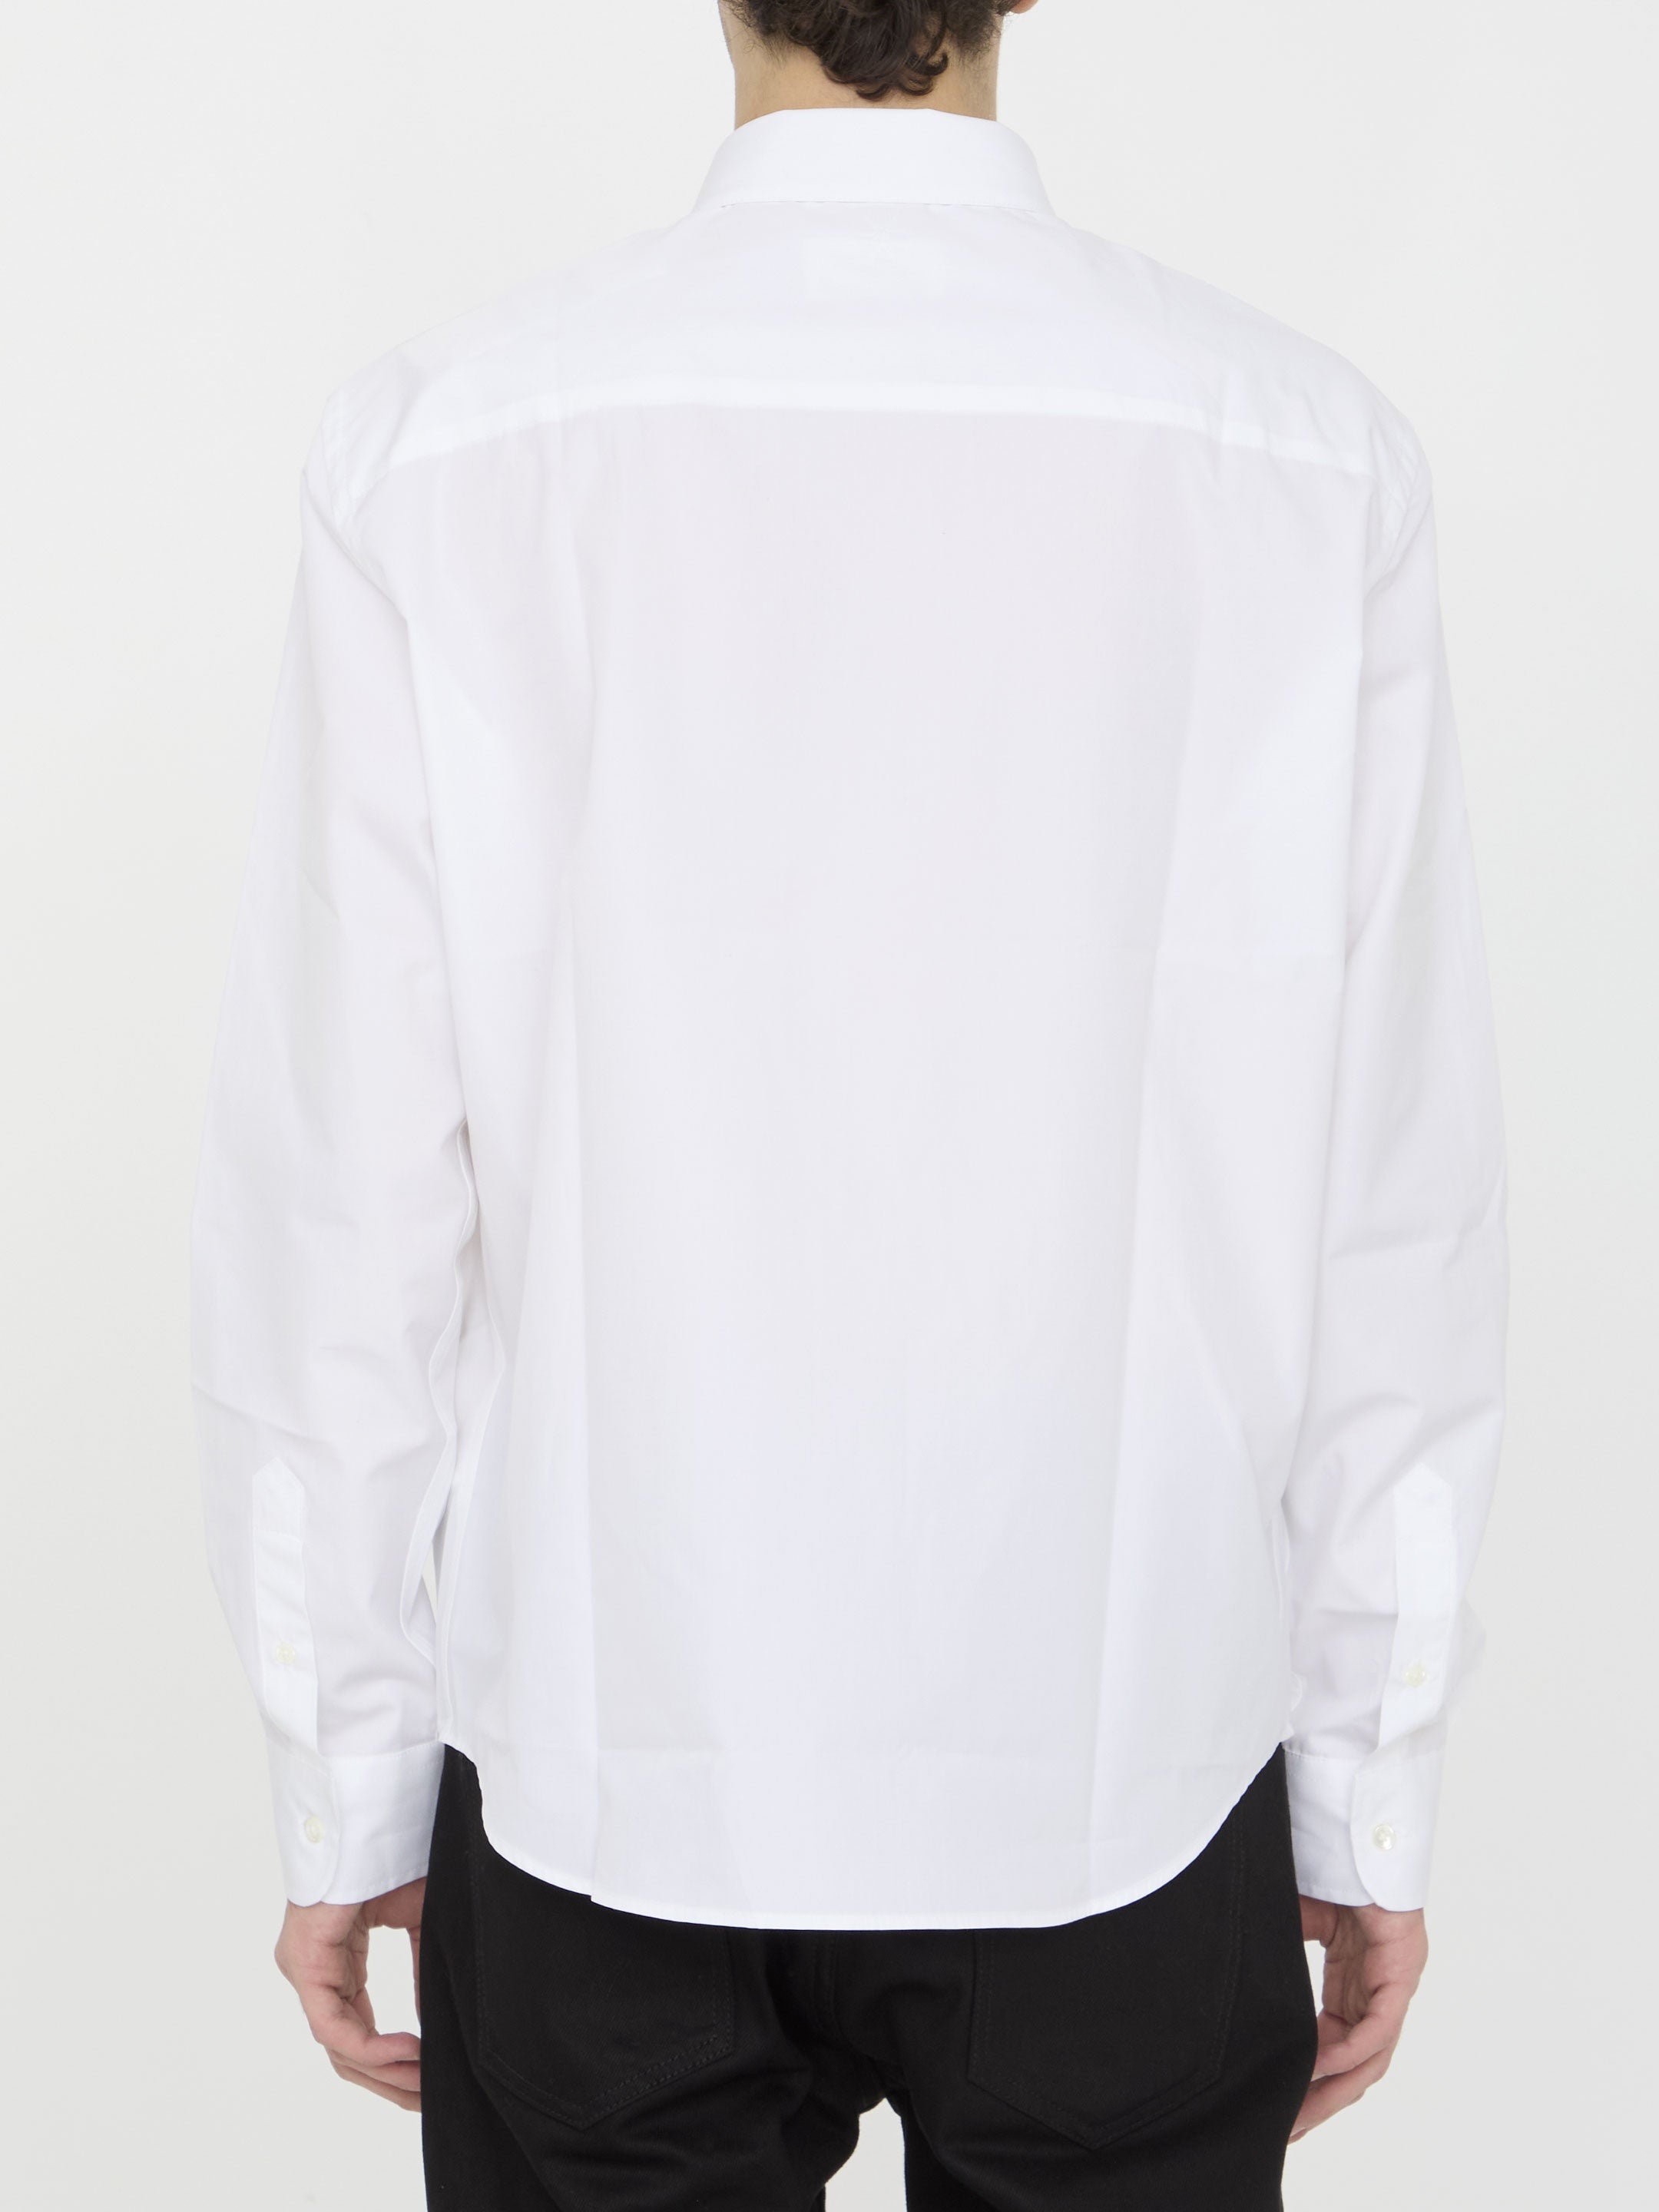 AMI-PARIS-OUTLET-SALE-Cotton-shirt-Shirts-ARCHIVE-COLLECTION-4.jpg